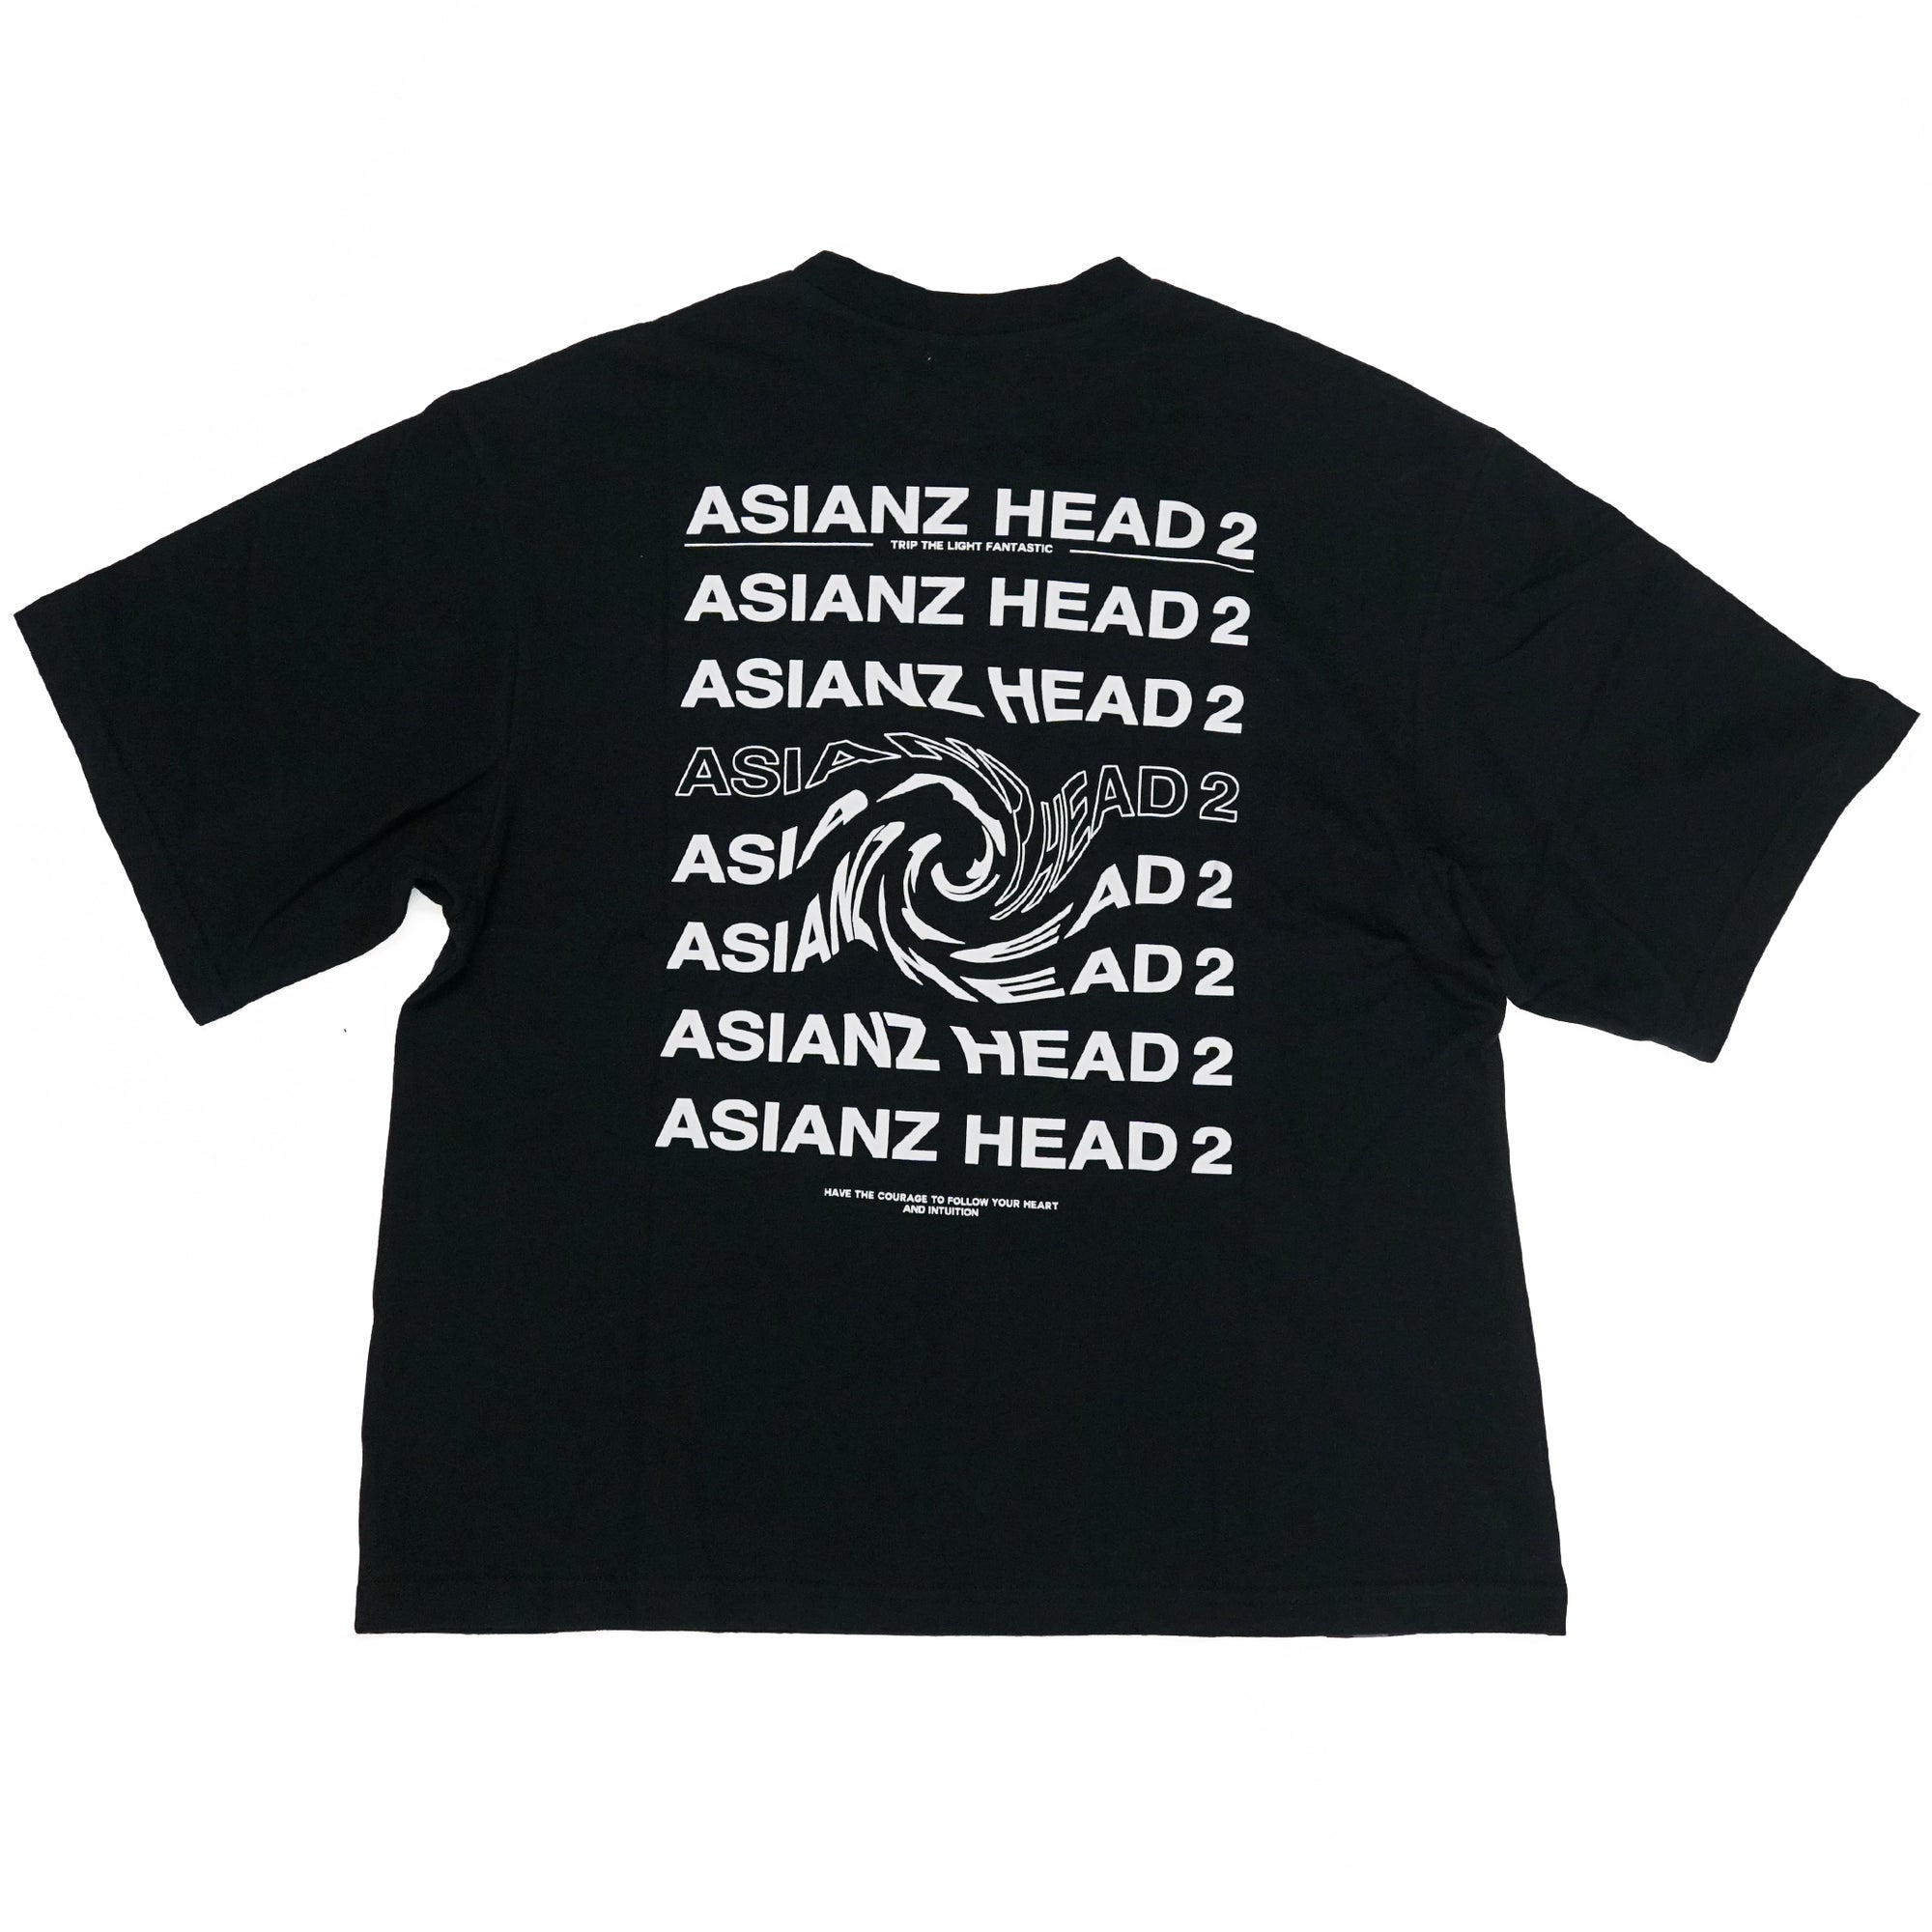 40%オフ! セール商品) ASIANZ HEAD2 胸ポケットTシャツ キッズウェアー 